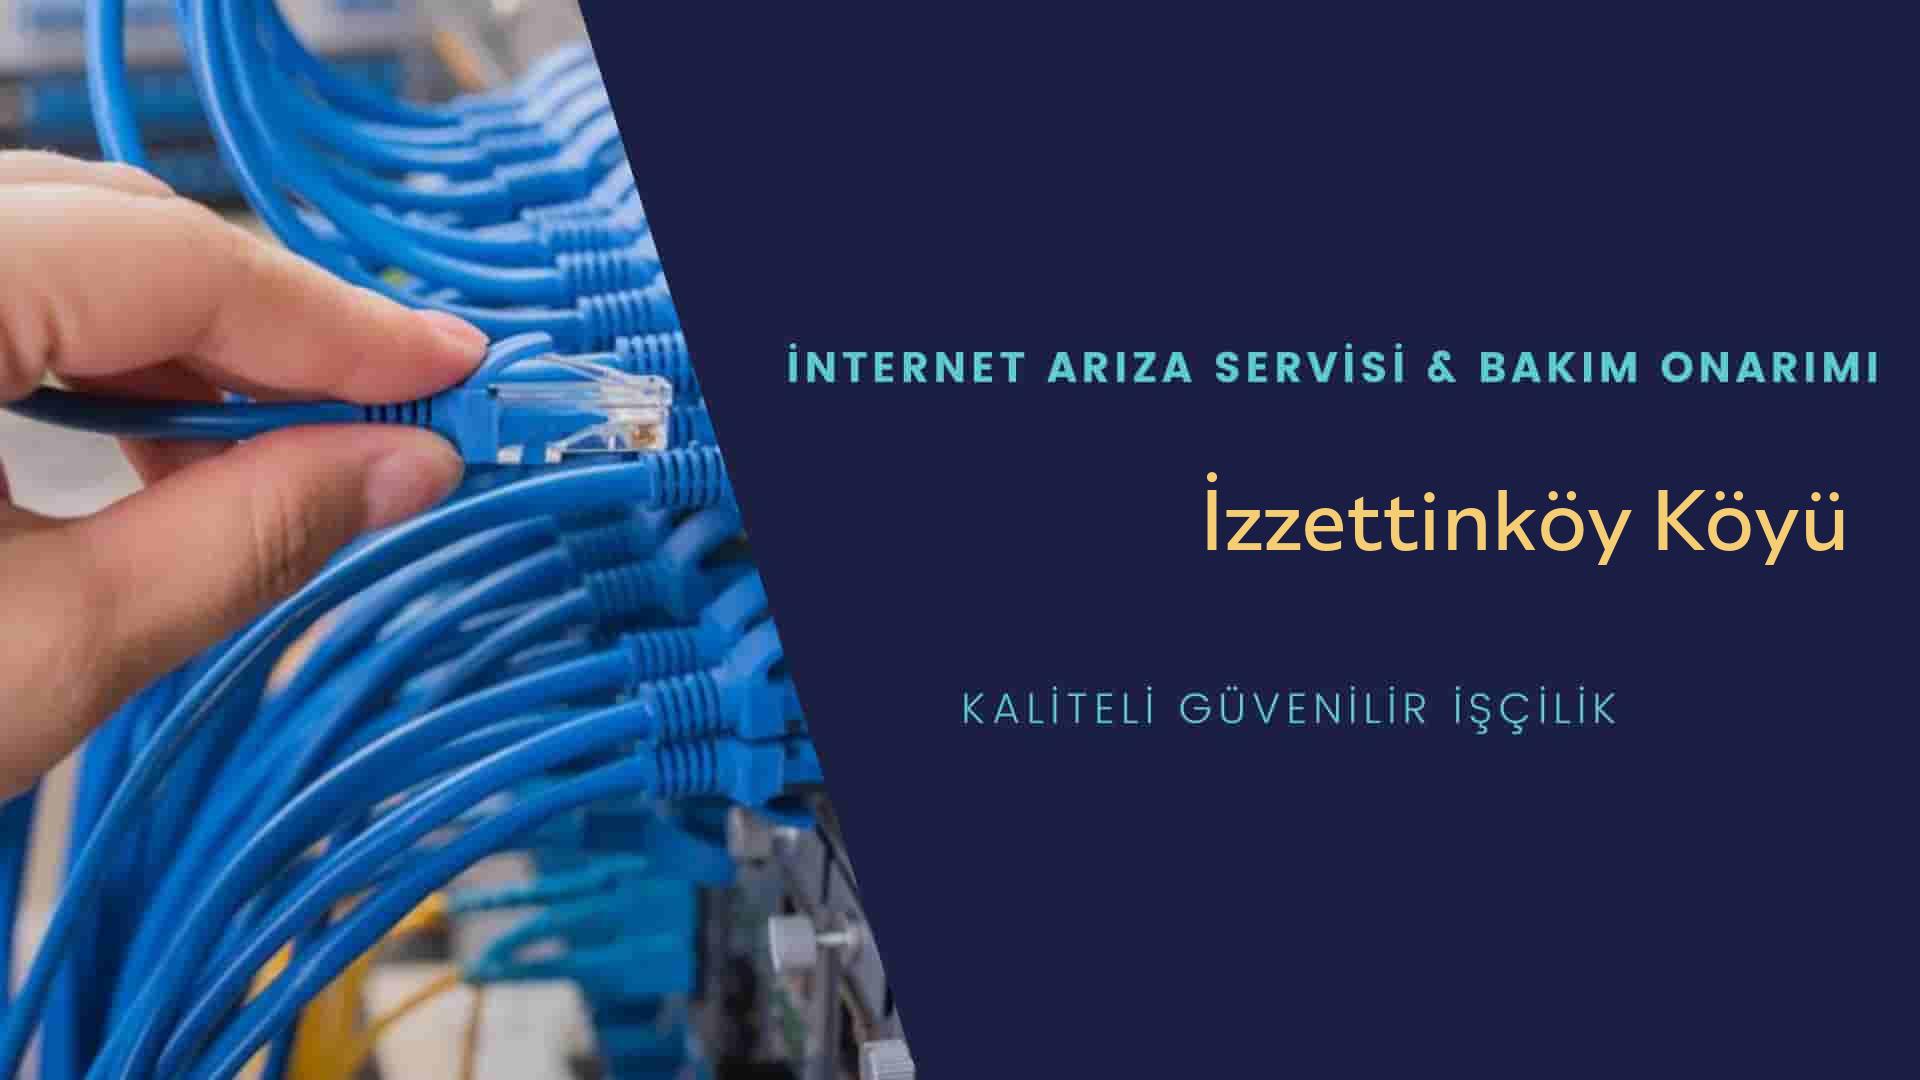 İzzettinköy Köyü internet kablosu çekimi yapan yerler veya elektrikçiler mi? arıyorsunuz doğru yerdesiniz o zaman sizlere 7/24 yardımcı olacak profesyonel ustalarımız bir telefon kadar yakındır size.